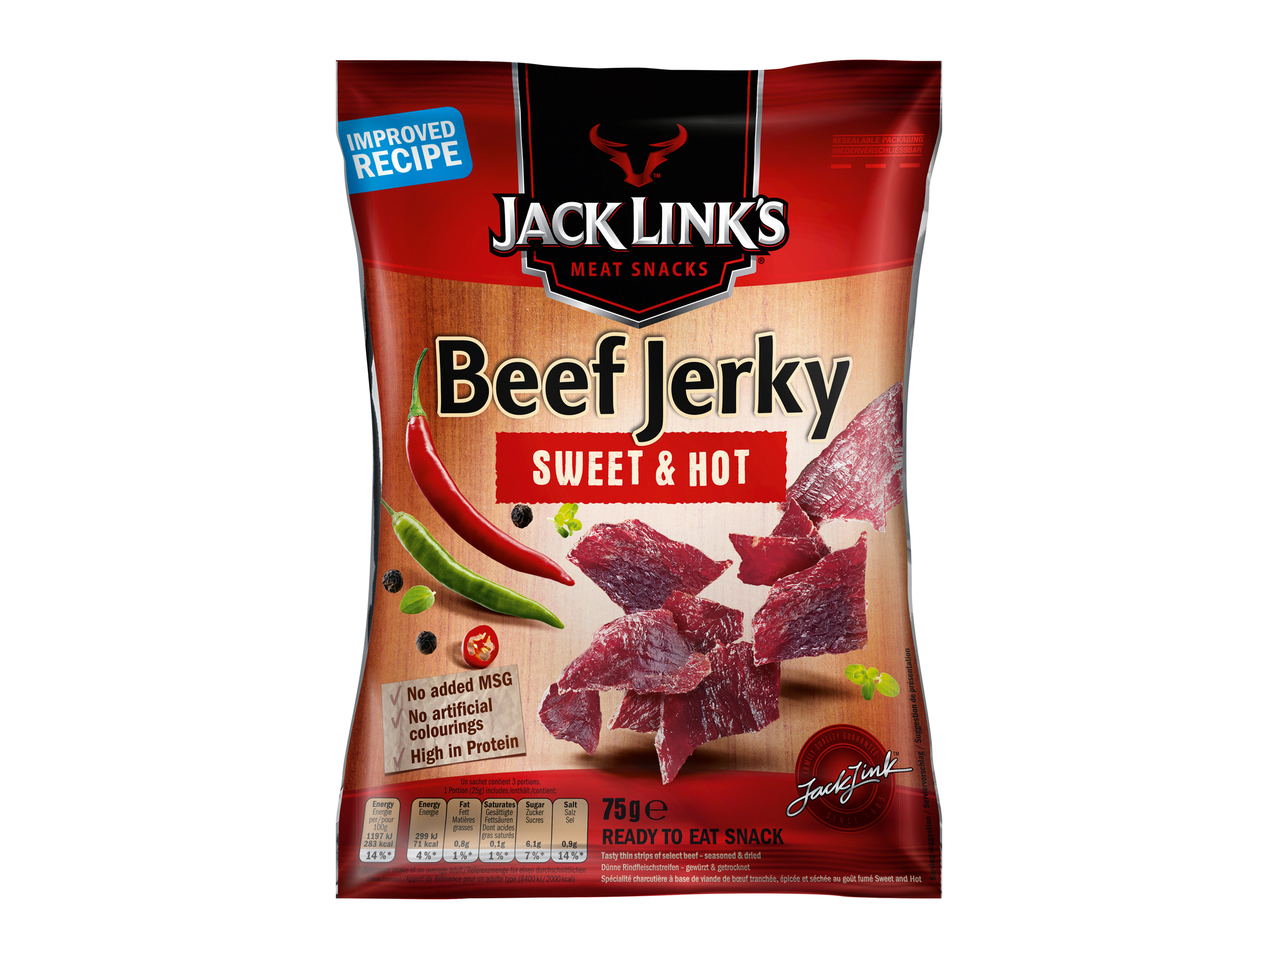 Jack Link‘s Beef Jerky Sweet & Hot